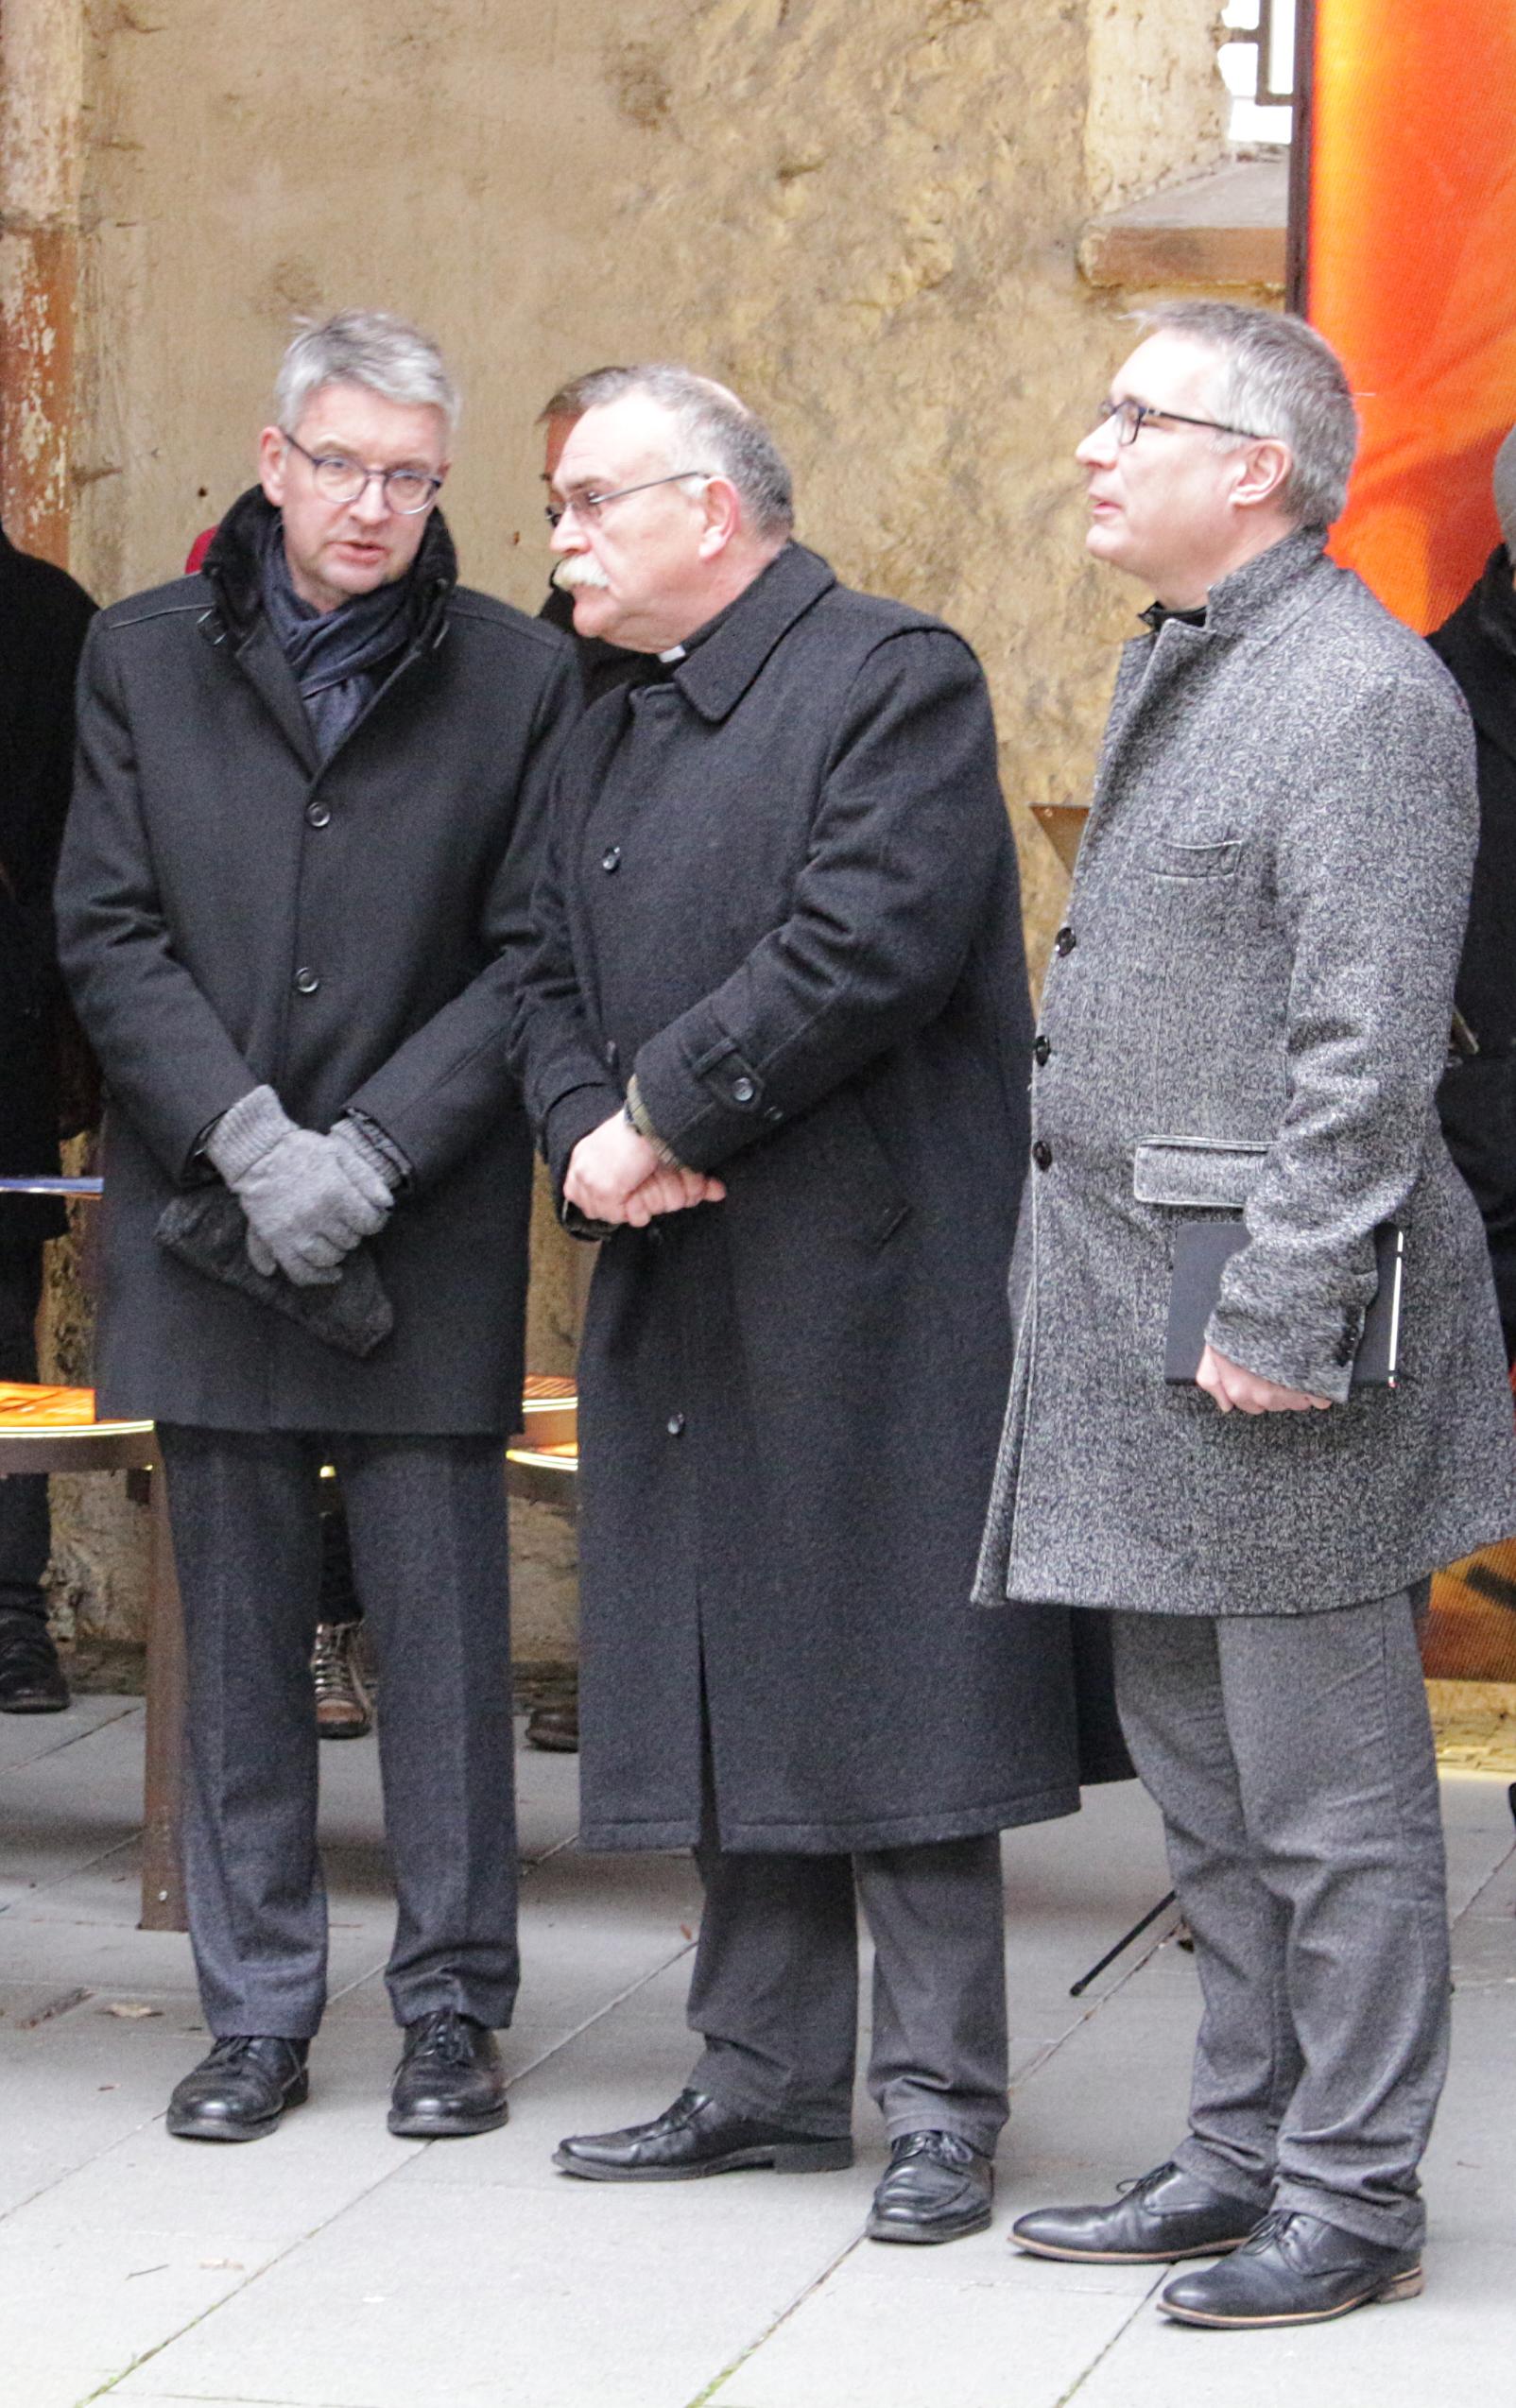 Mainz, 27. Februar 2020: Bischof Peter Kohlgraf (links) am Rande des Gedenkens an die Opfer des Bombenangriffs auf Mainz mit Dekan Markus Kölzer (mitte) und Dekan Andreas Klodt. (c) Bistum Mainz / Blum